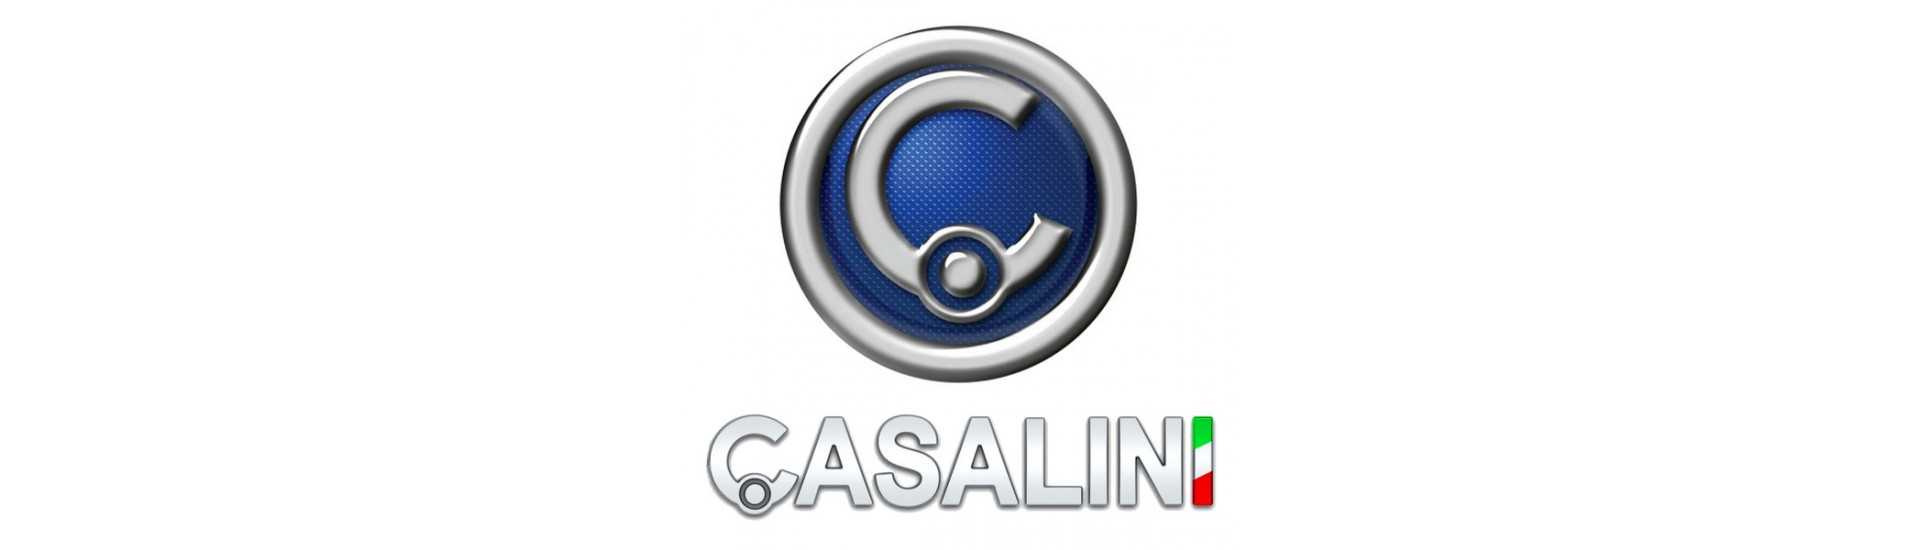 Eterul de frânare la cel mai bun preț pentru o mașină fără permis Casalini